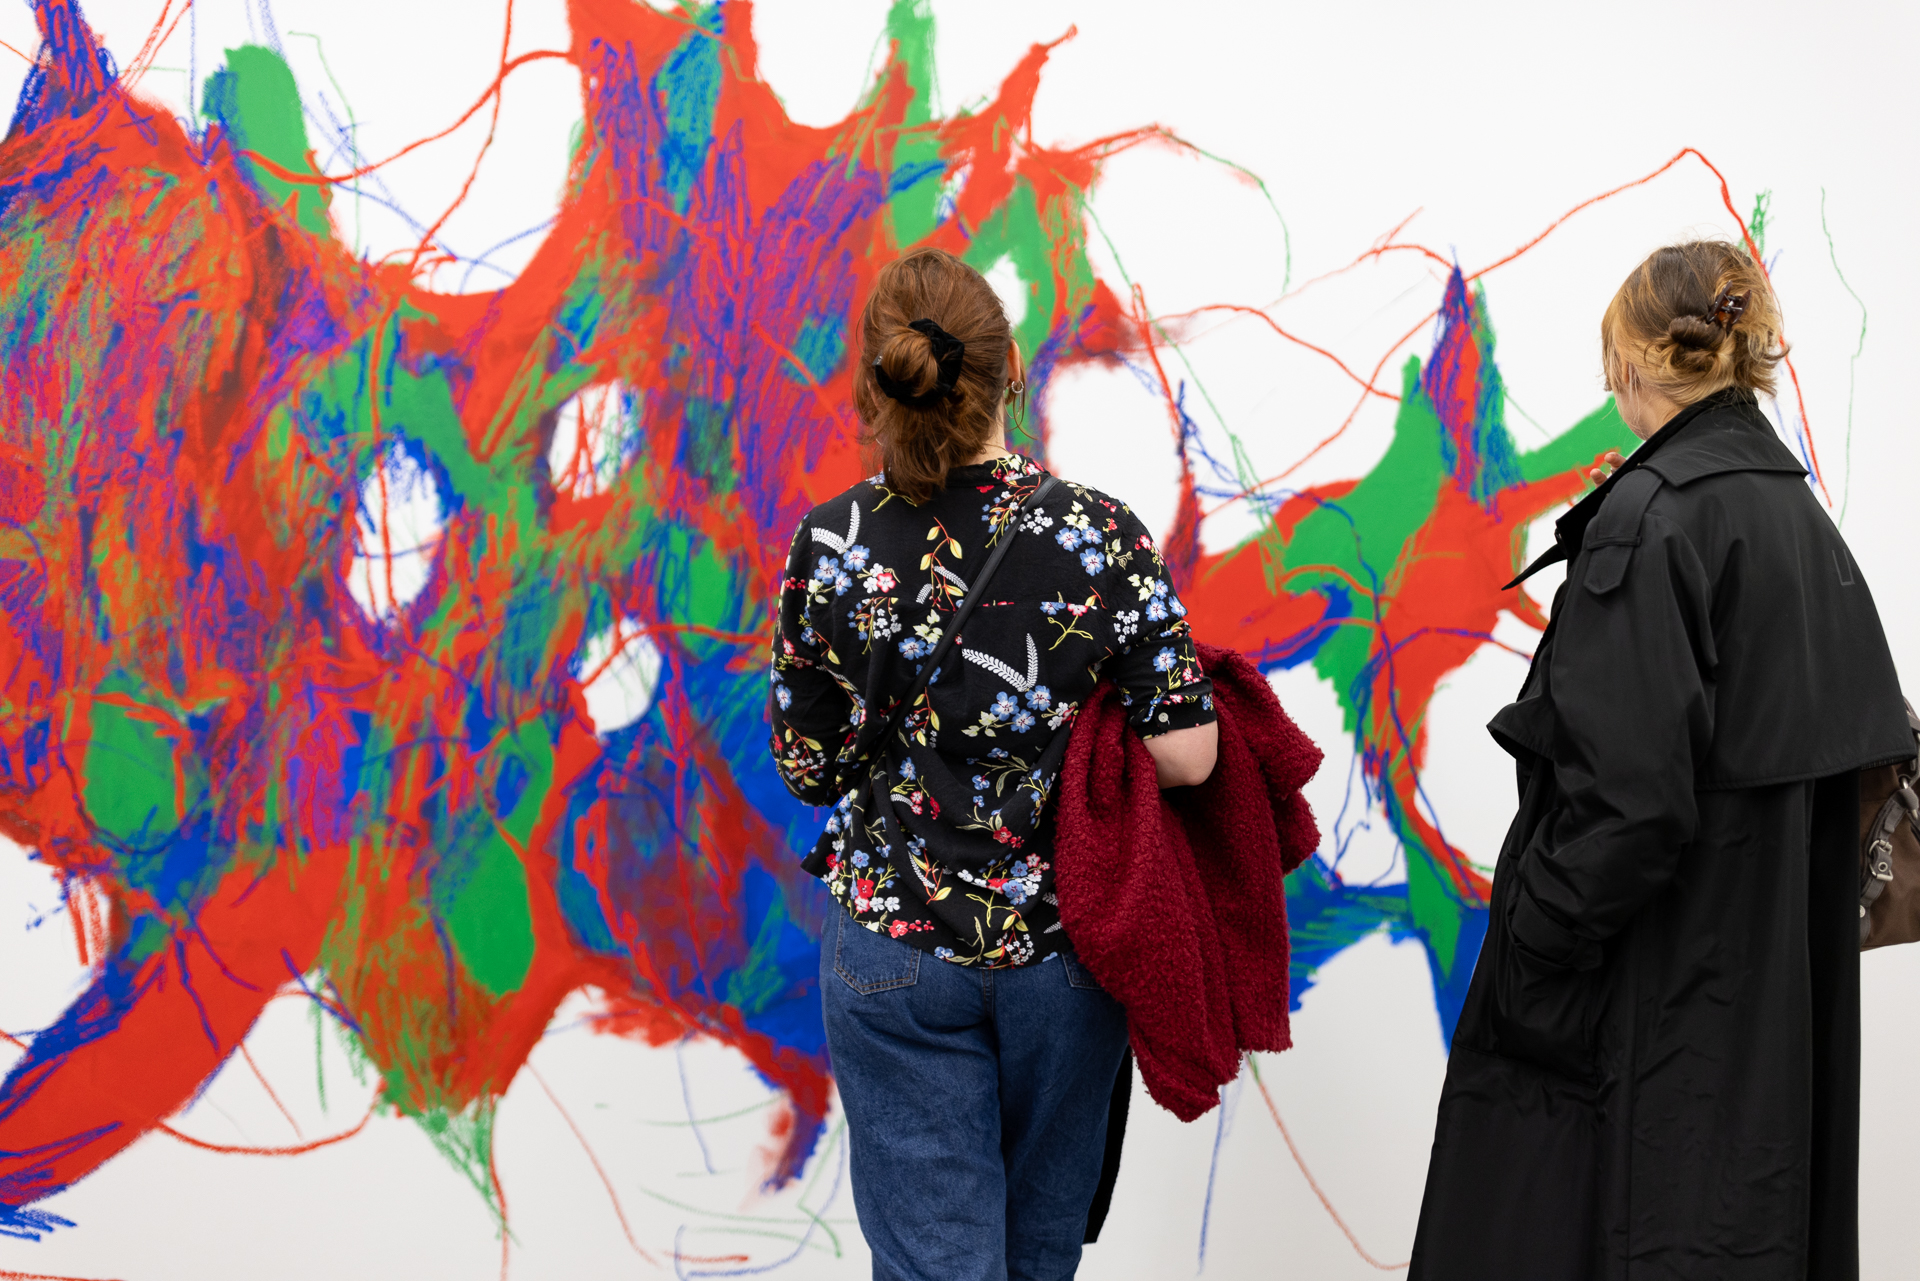 Zwei Menschen, die von hinten zu sehen sind, stehen vor einer bunten Wandmalerei, die sich netzartig in den Farben grün, rot und blau über diese ausbreitet. 